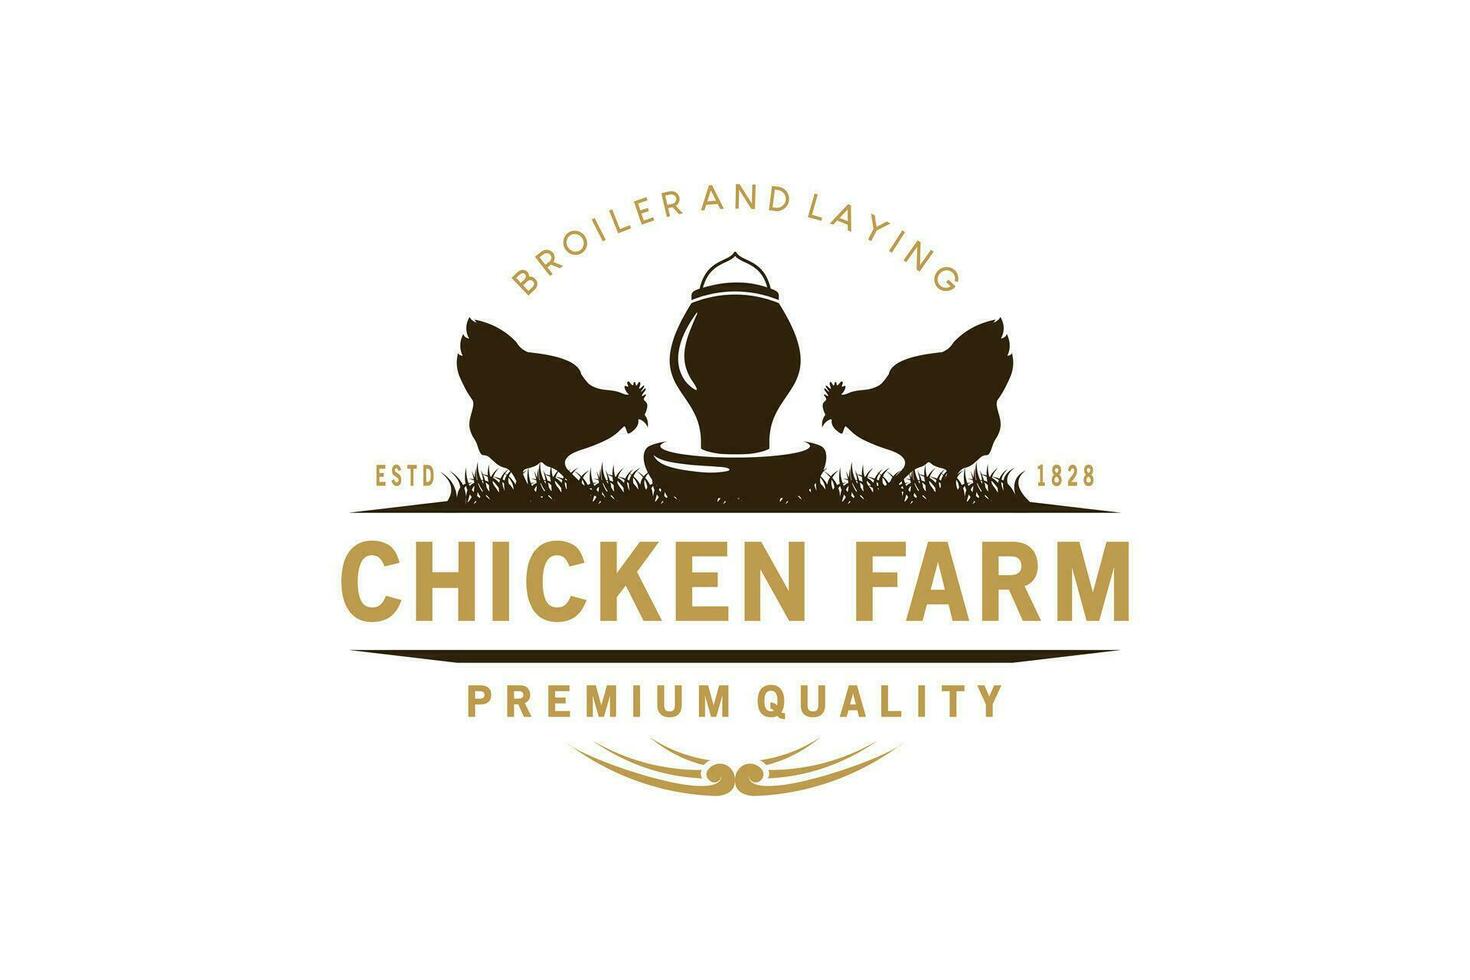 Clásico pollo granja logo diseño, parrilla granja vector ilustración, tendido gallinas